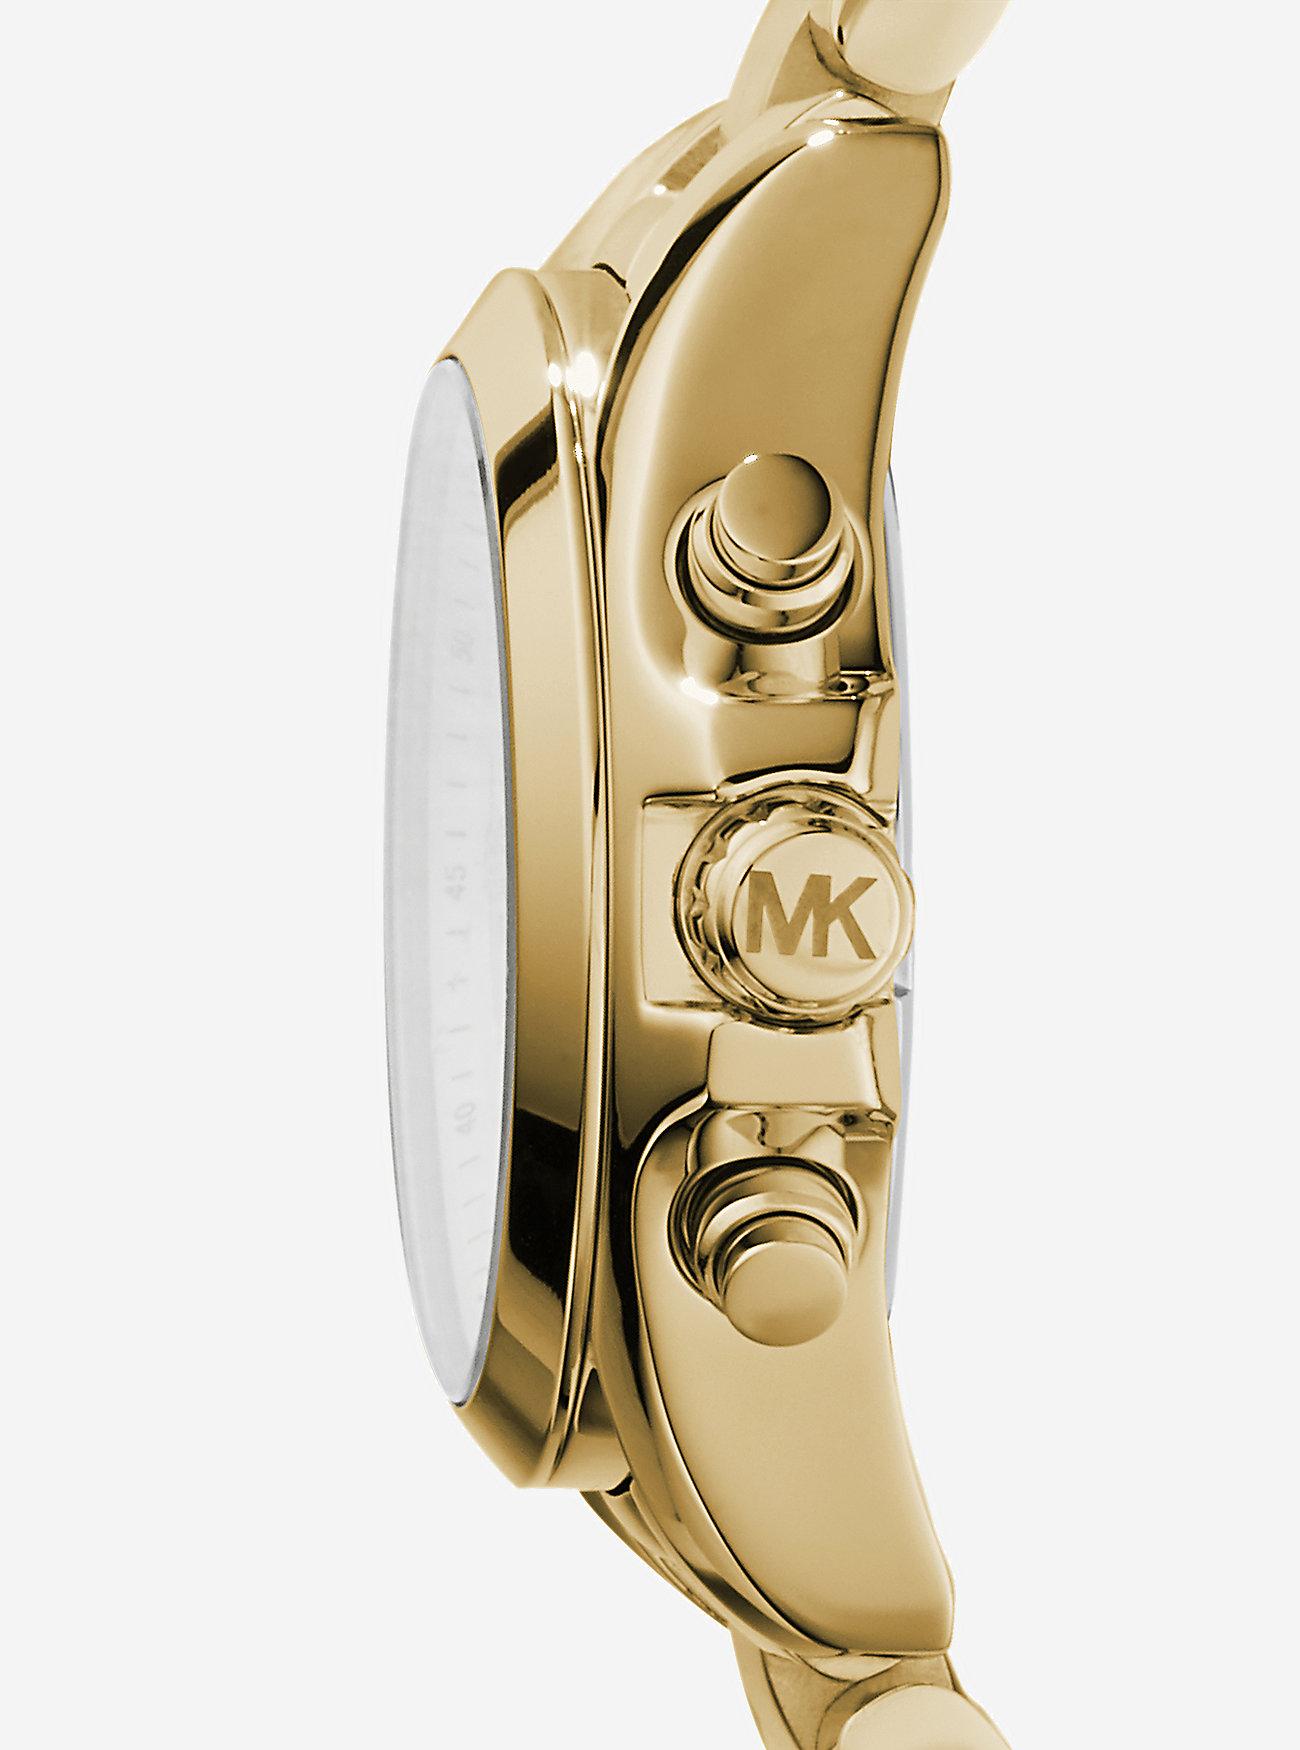 Đồng Hồ Michael Kors Bradshaw Gold-Tone Stainless Steel Watch Nữ Vàng